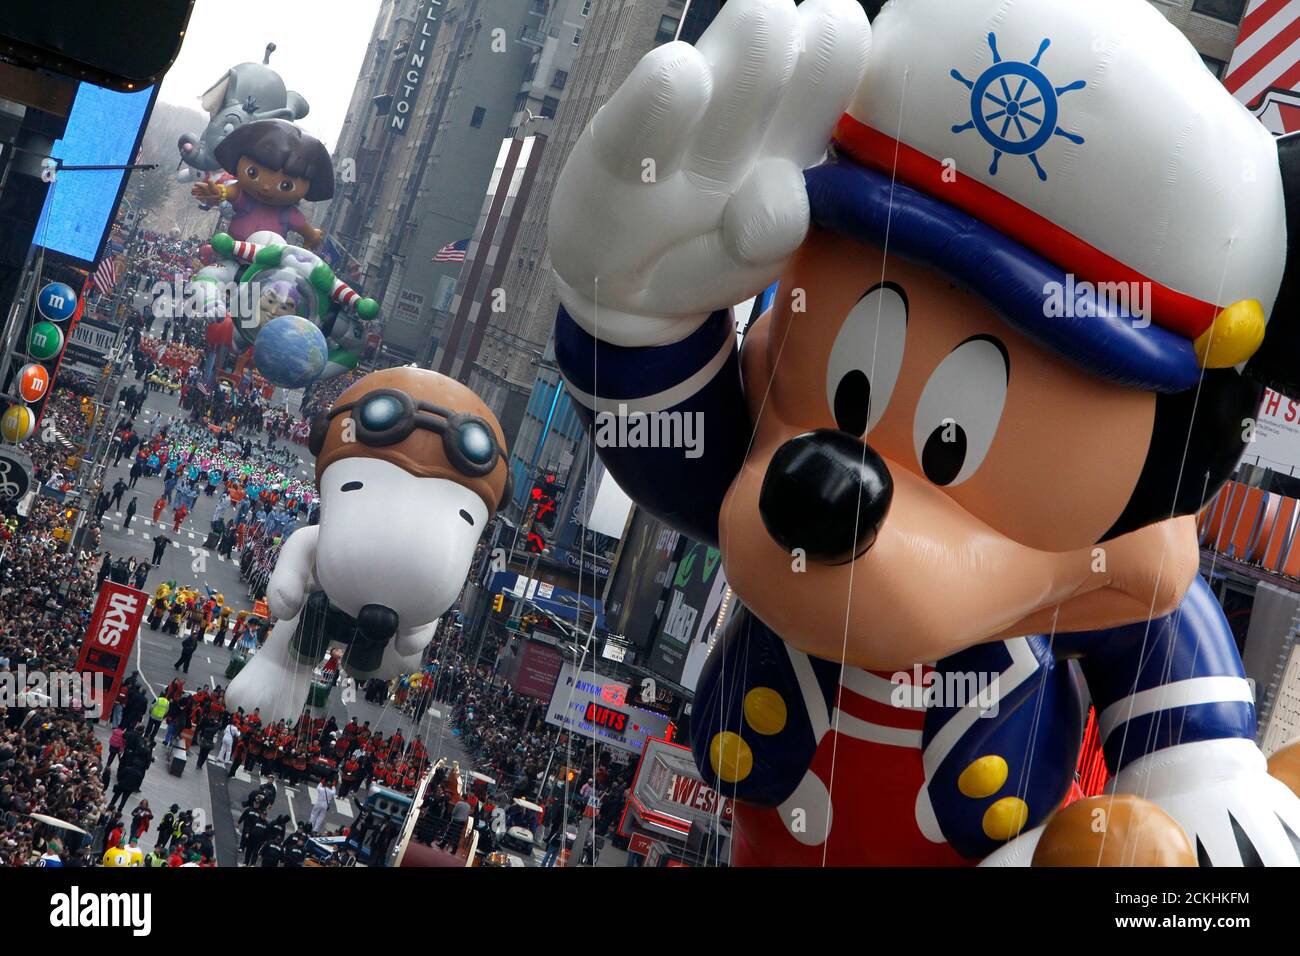 Ballons von Comic-Figuren machen ihren Weg nach unten Seventh Ave., während der 83. Macy's Thanksgiving Day Parade in New York 26. November 2009. REUTERS/Brendan McDermid (UNITED STATES Unterhaltung SOCIETY) Stockfoto